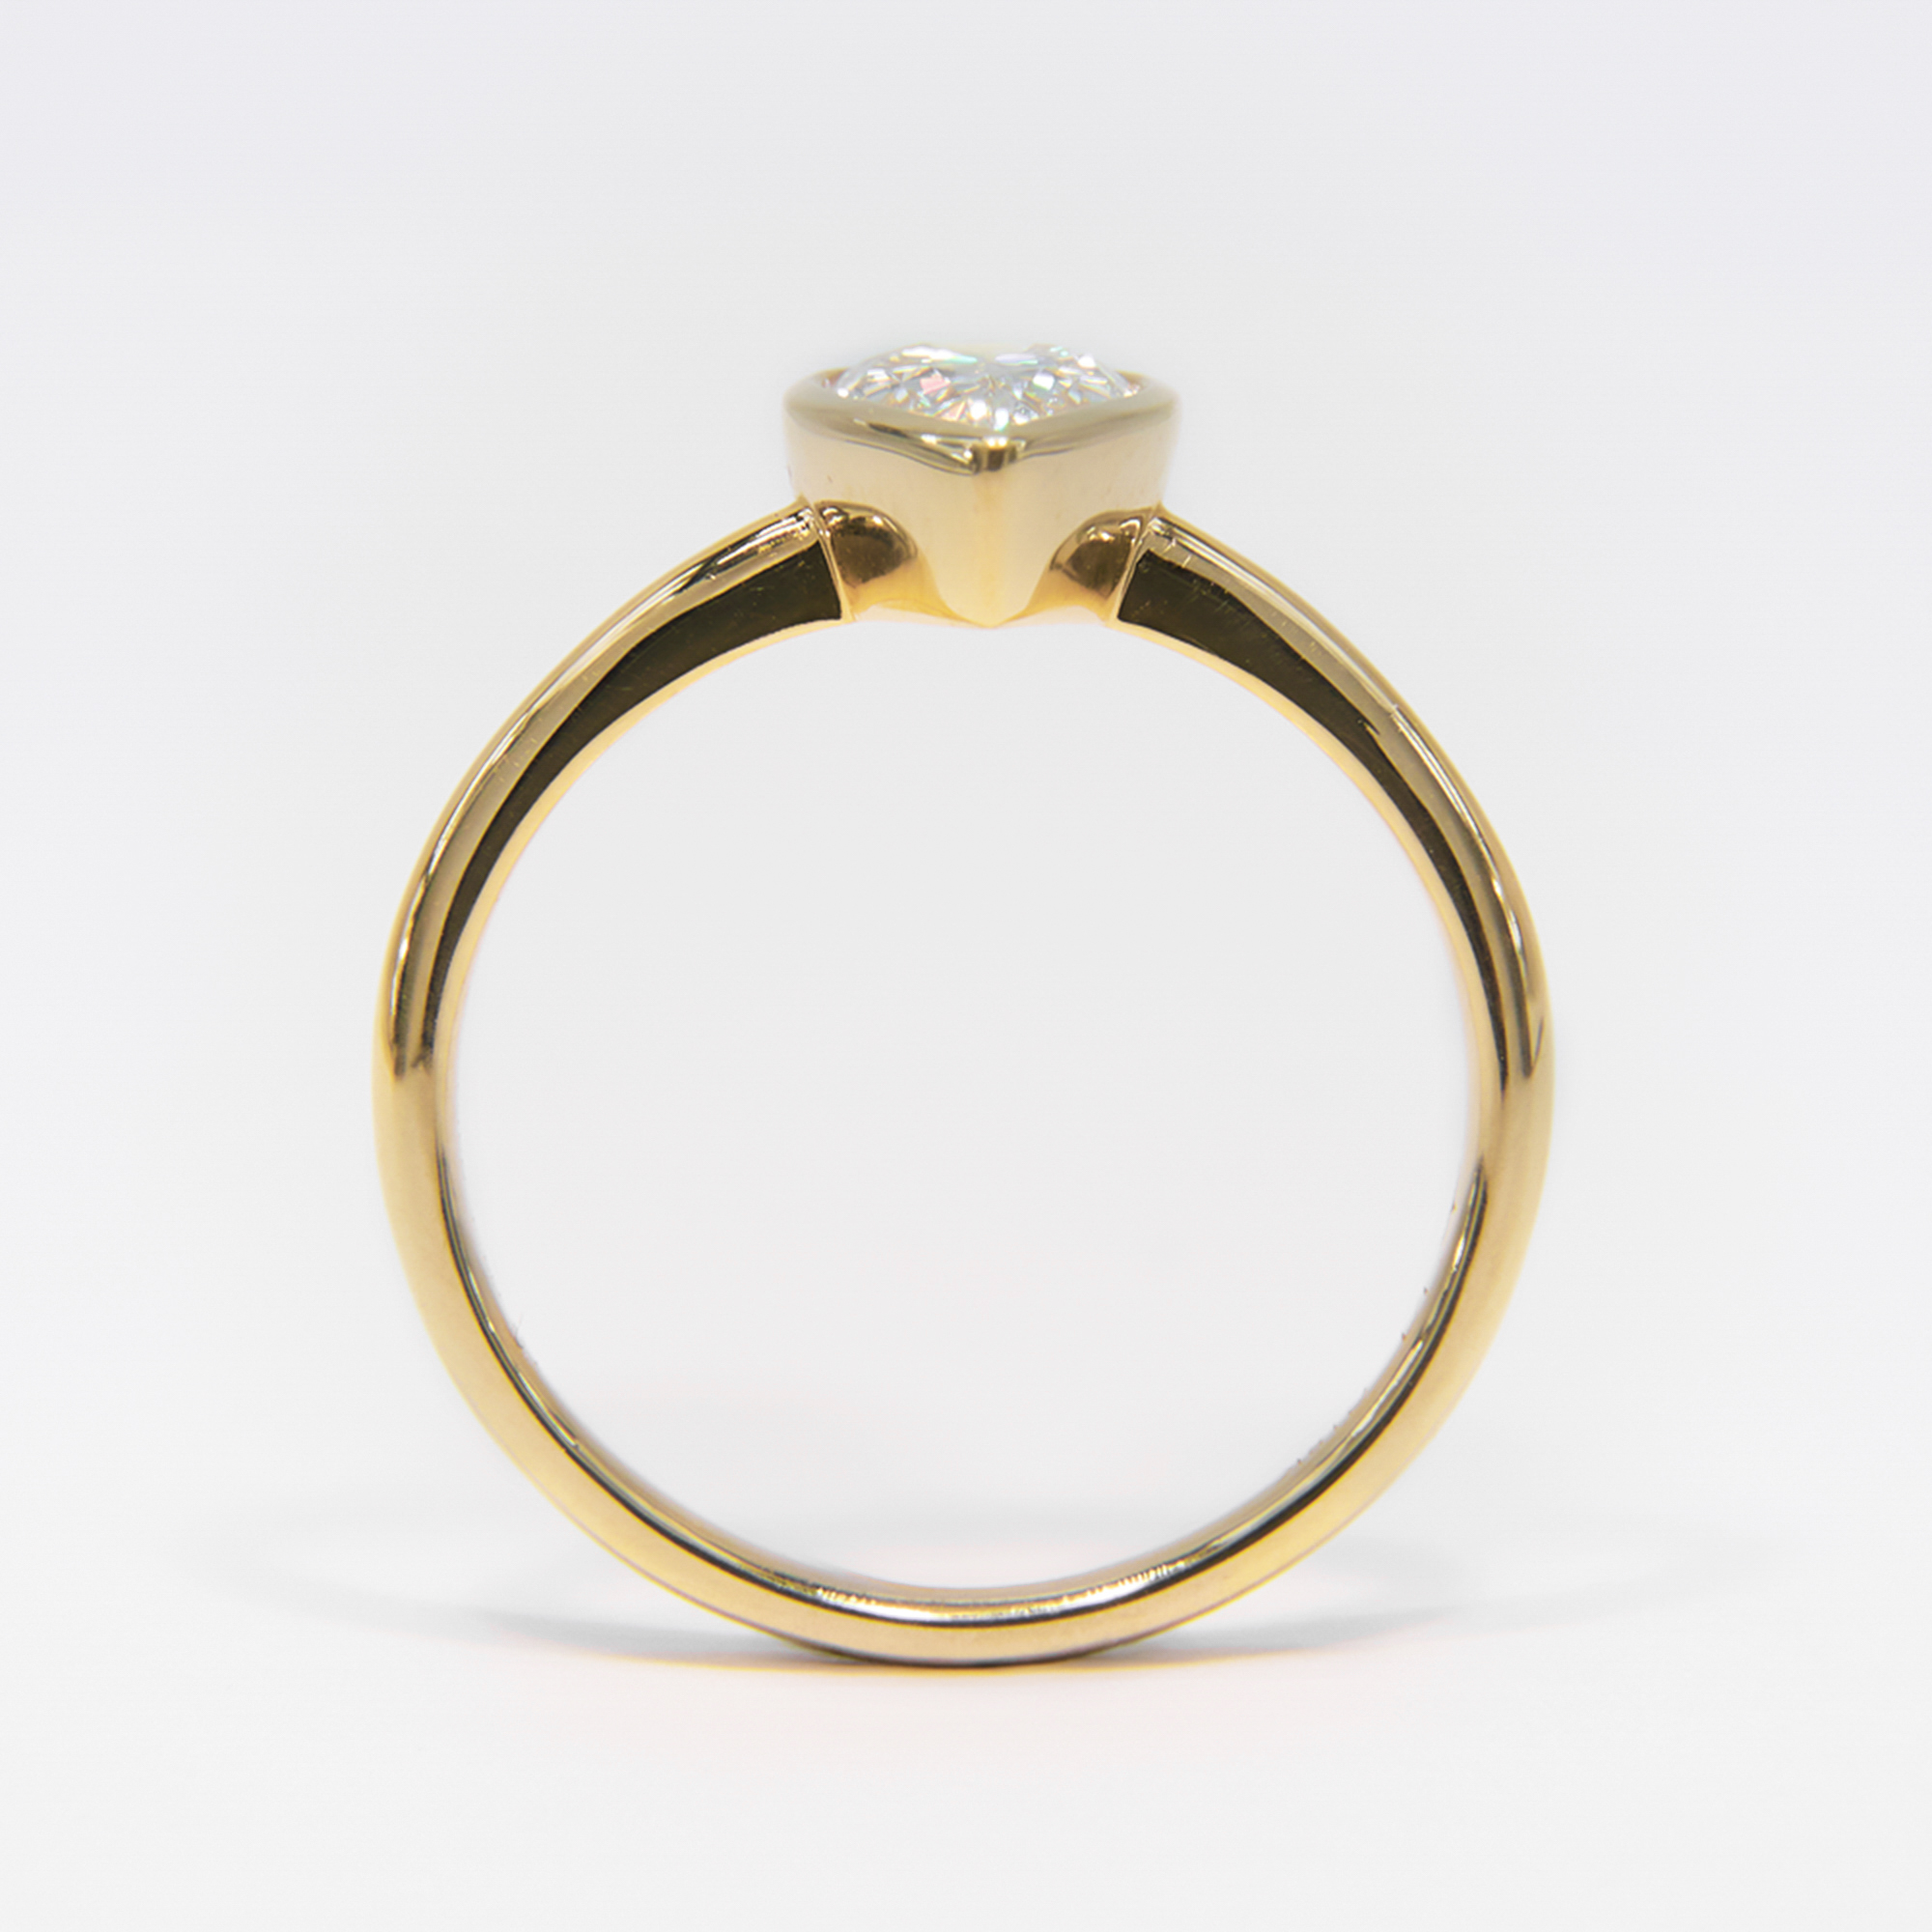 IGI Certified 18K Yellow Gold Pear Lab Grown Diamond Ring